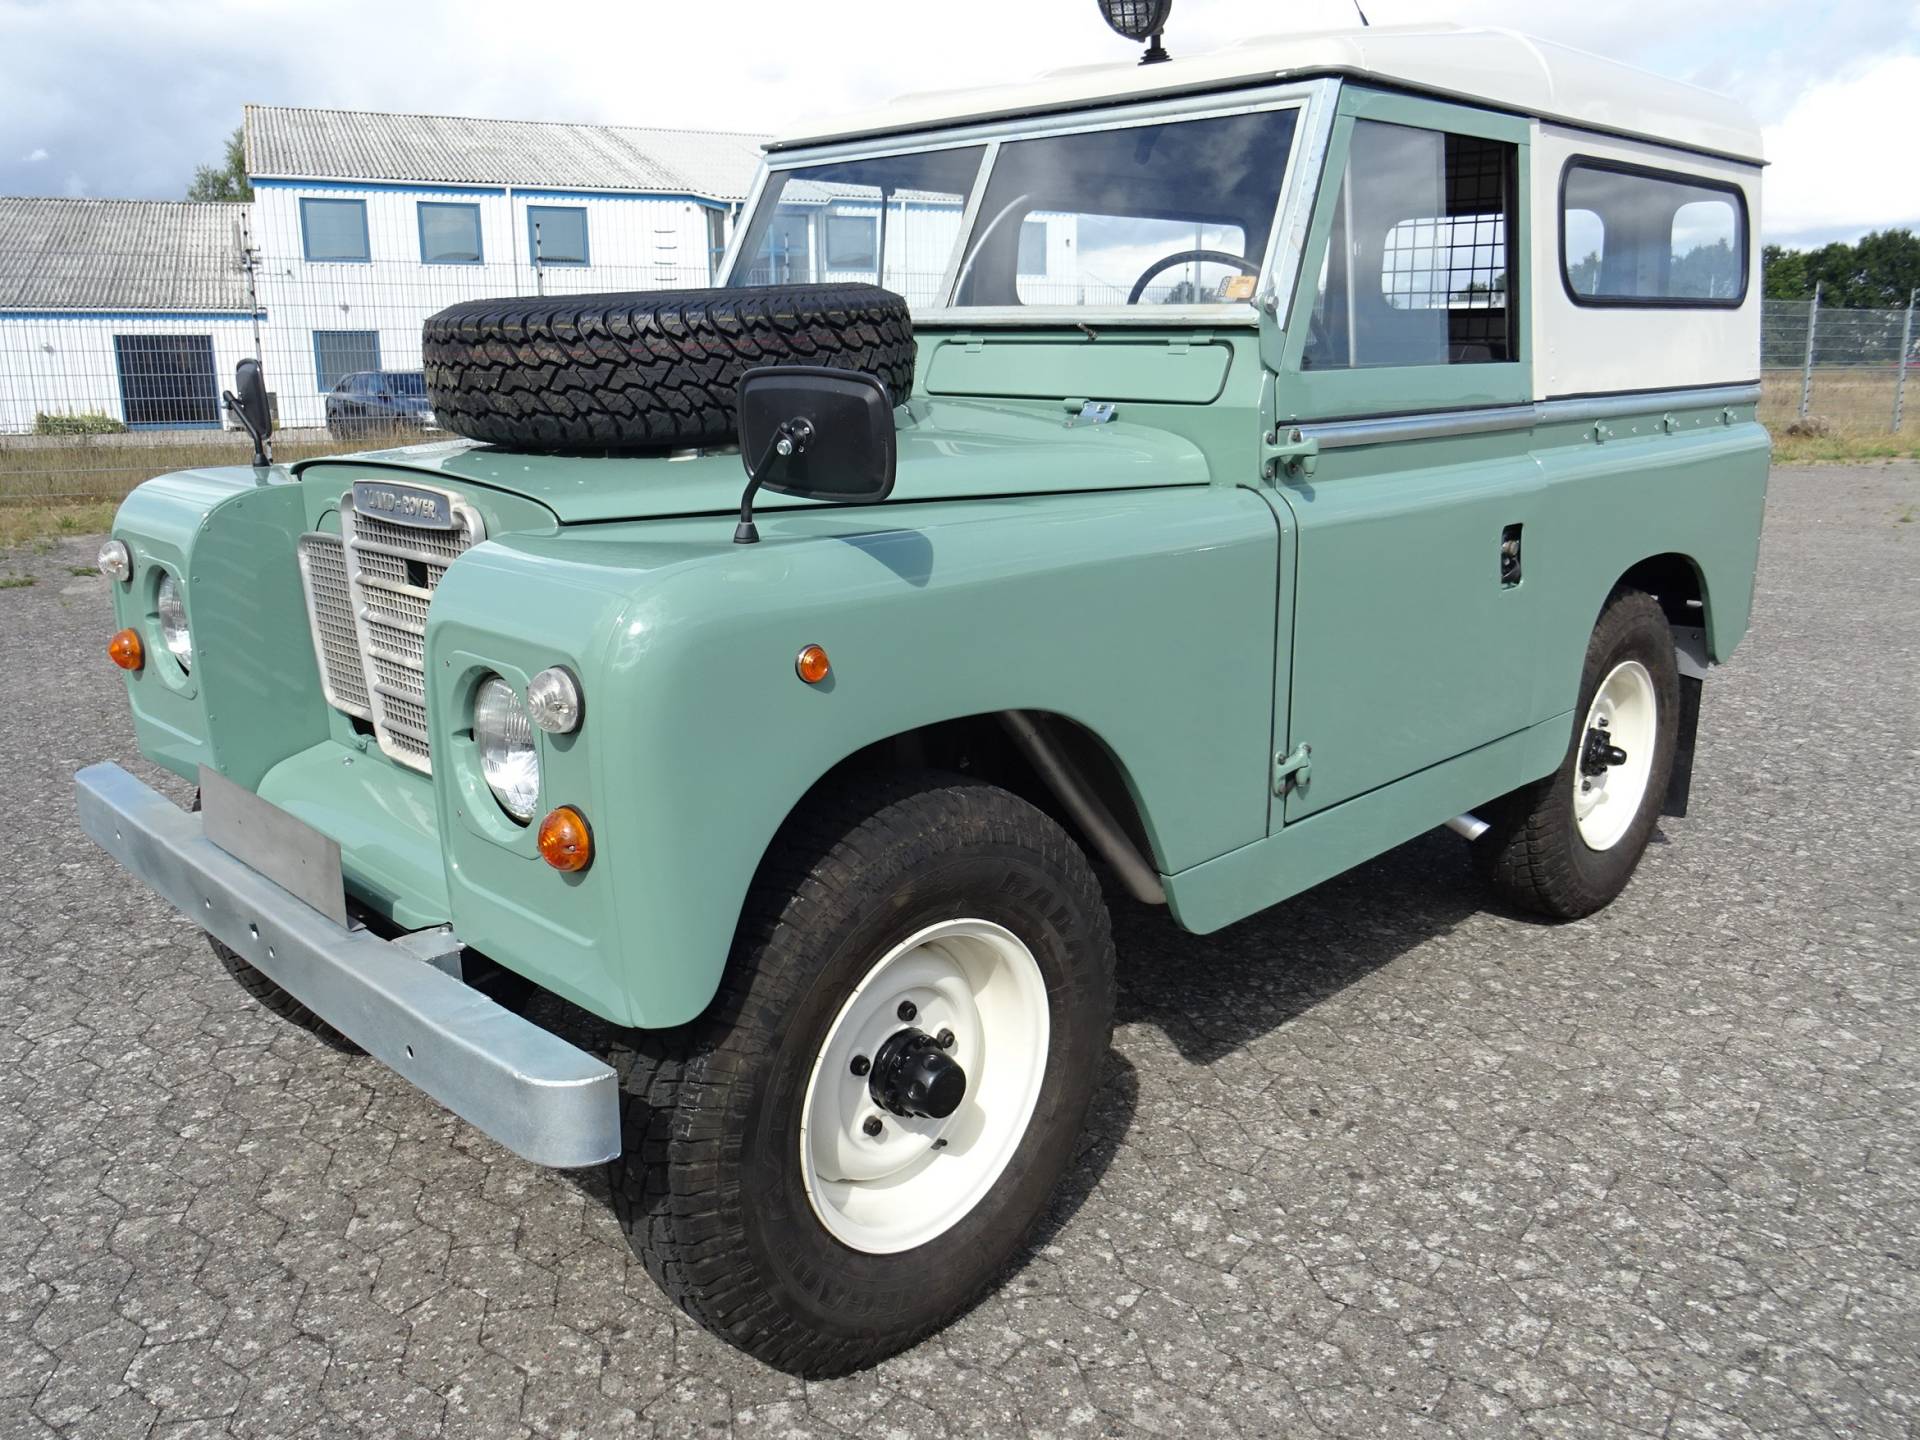 Achtervoegsel Onderscheppen ondanks Te koop: Land Rover 88 (1969) aangeboden voor € 44.400